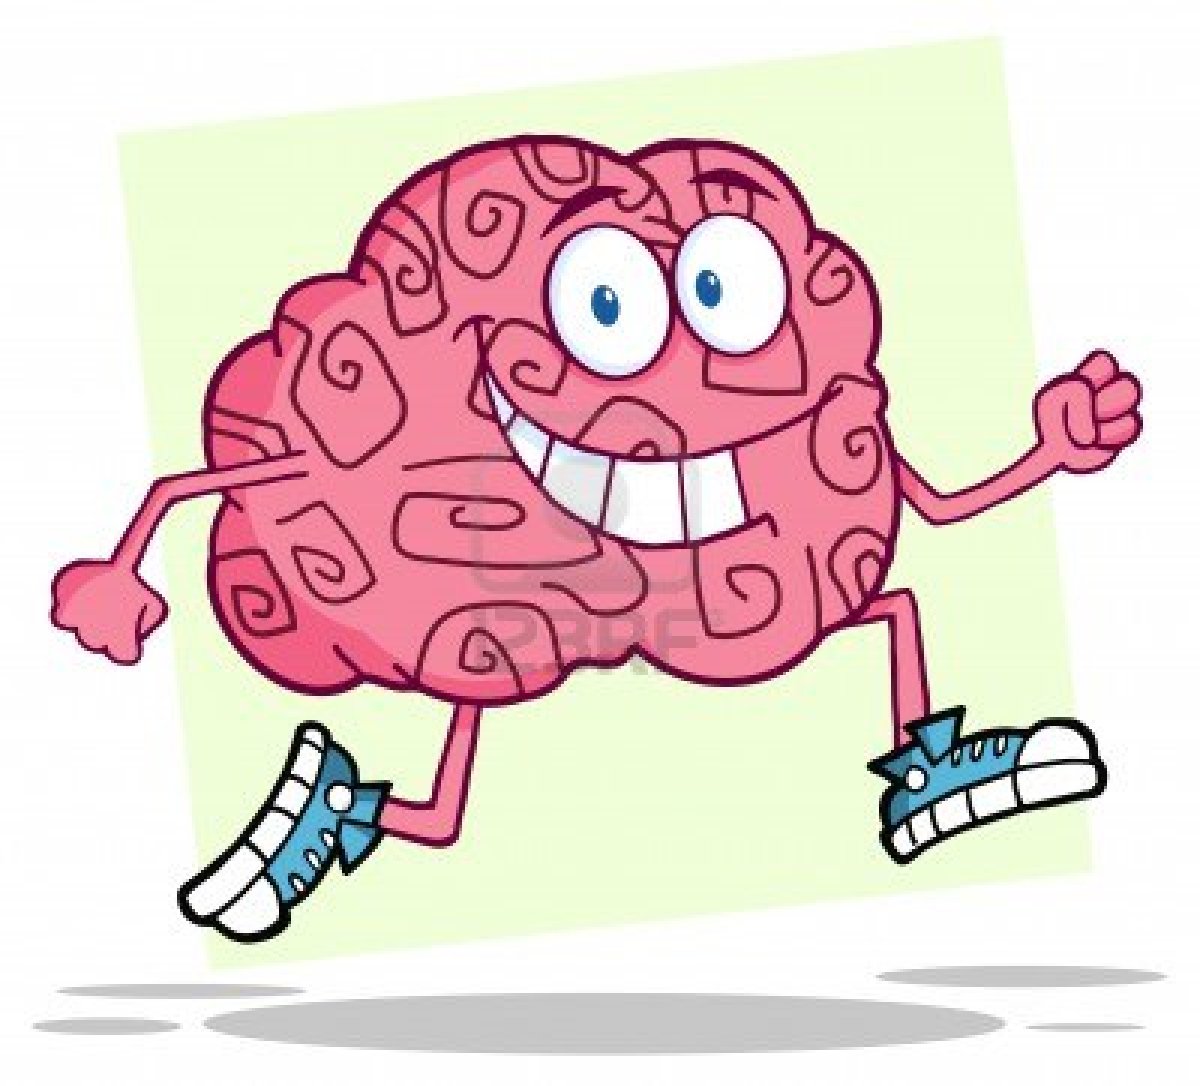 Brain running